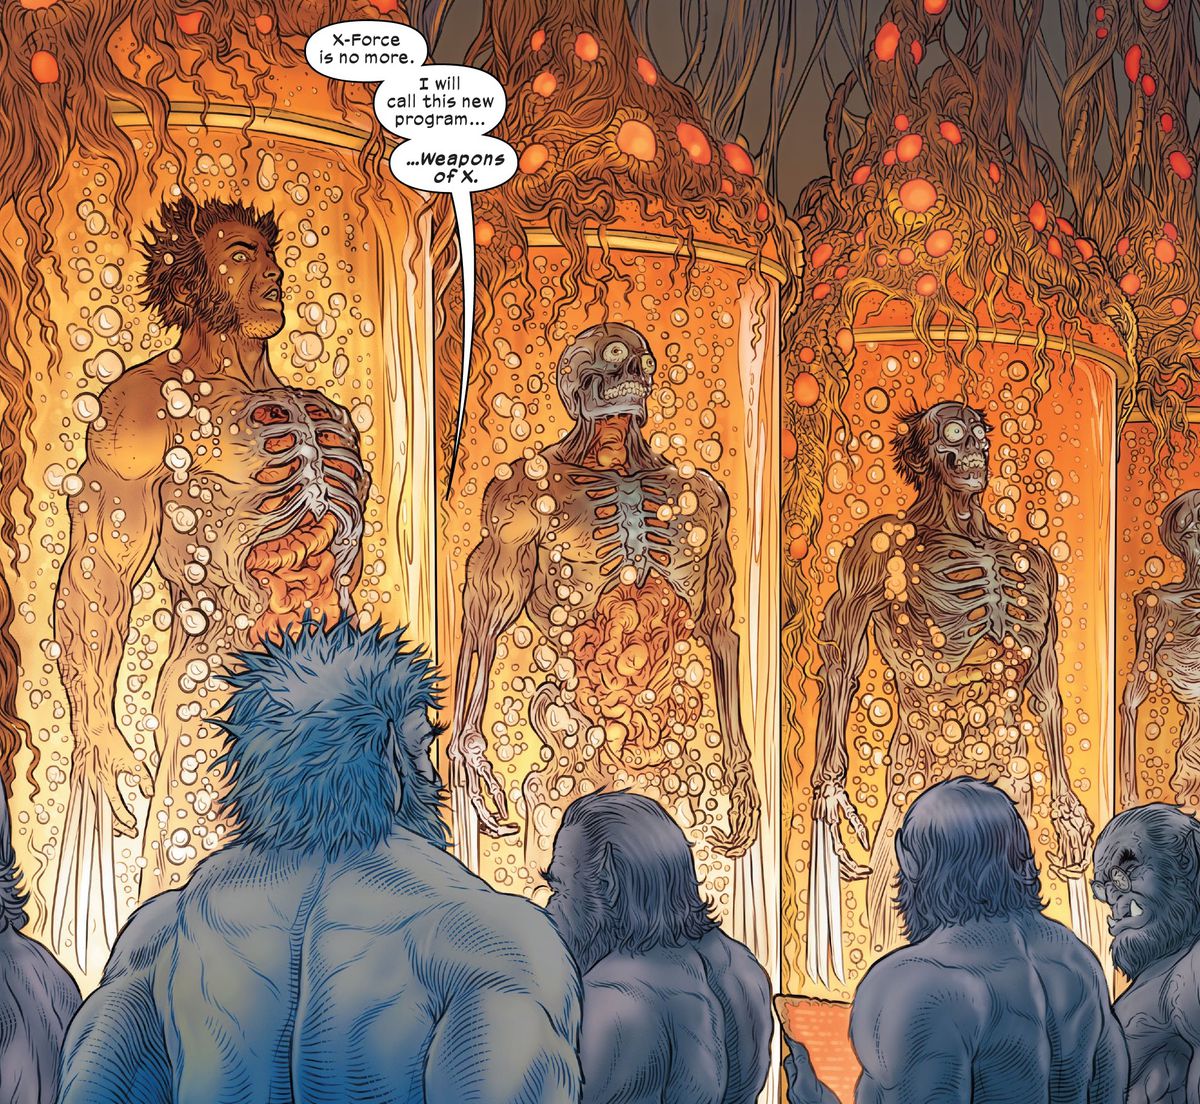 "X-Forcea ei ole enää", Beast sanoo neljälle muulle Beast-kloonille, jotka valvovat useita kasvavia Wolverine-klooneja. "Kutsun tätä uutta ohjelmaa... Weapons of X", Wolverine #31 (2023).